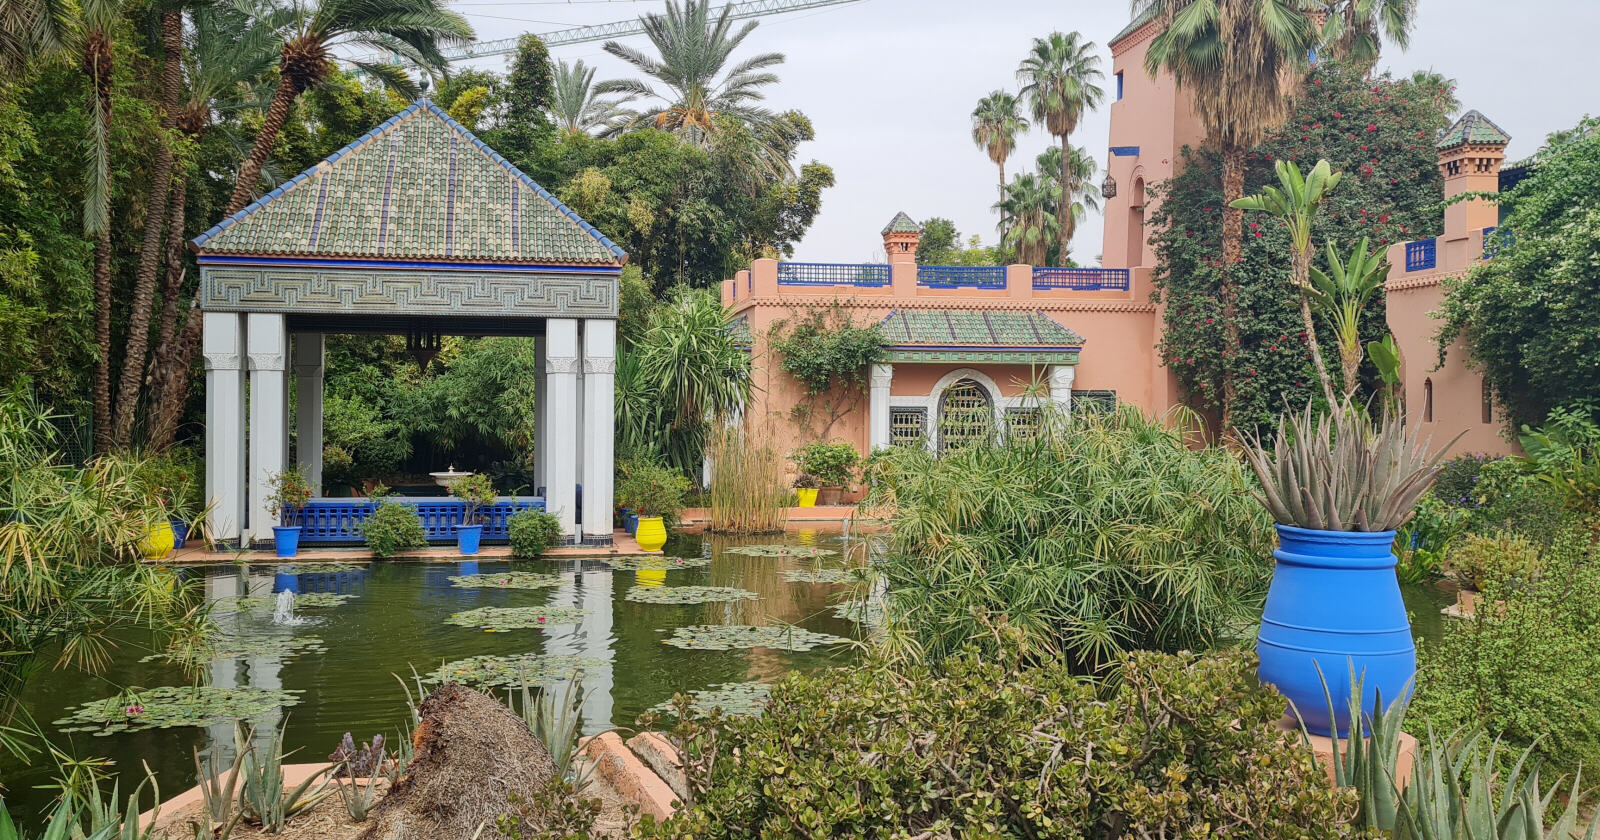 The Jardin Majorelle in Marrakech